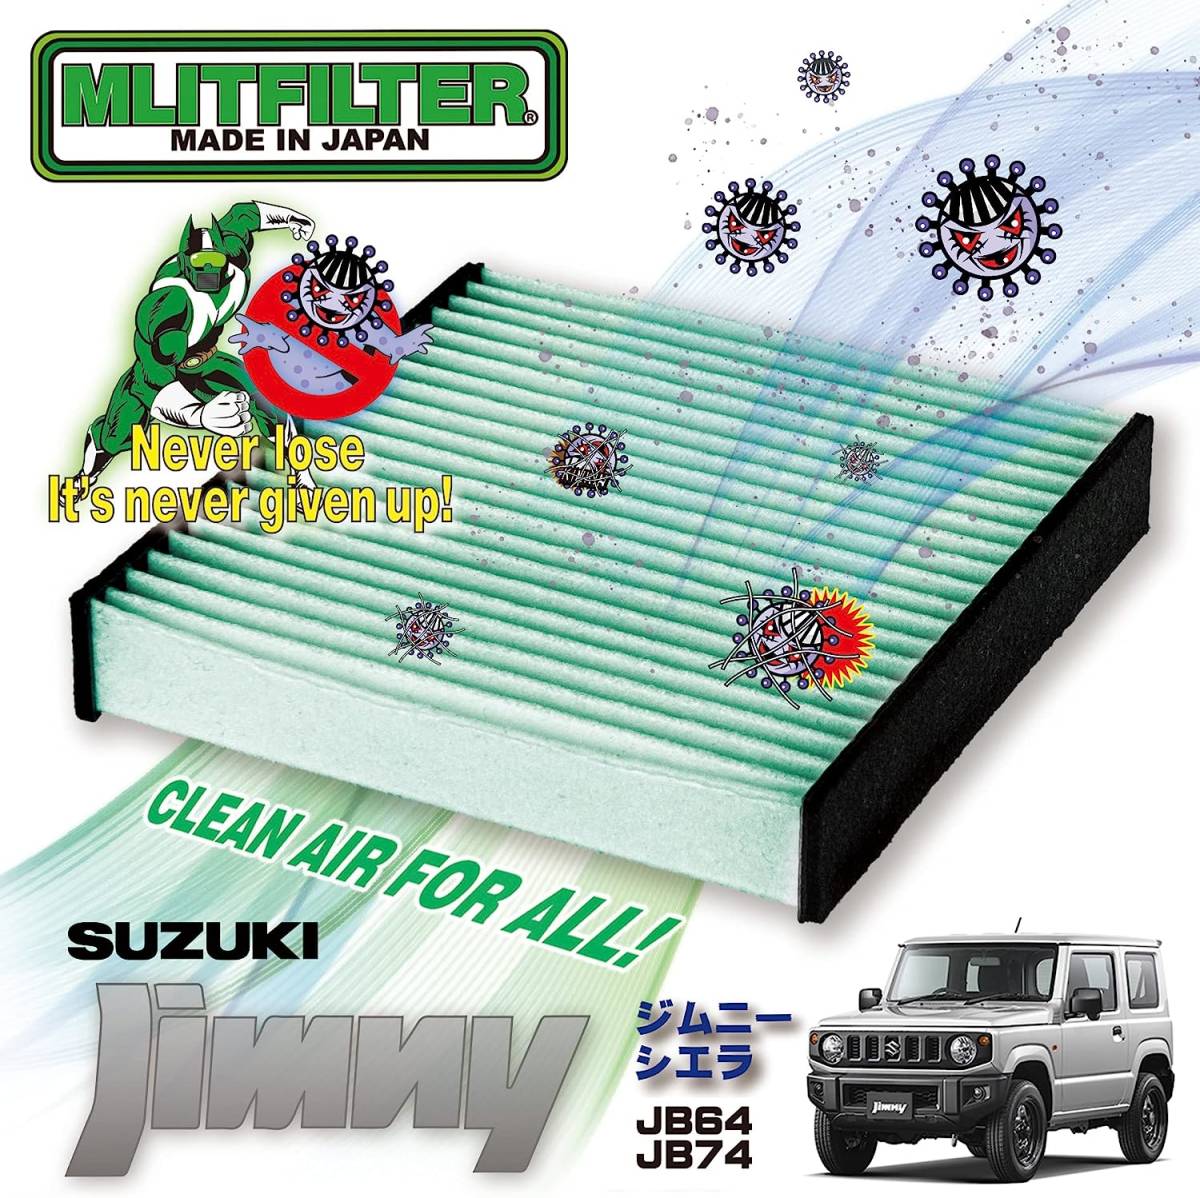  M lito filter (MLITFILTER) Suzuki Jimny (JB64/JB74) air conditioner filter D-110_JIMNY